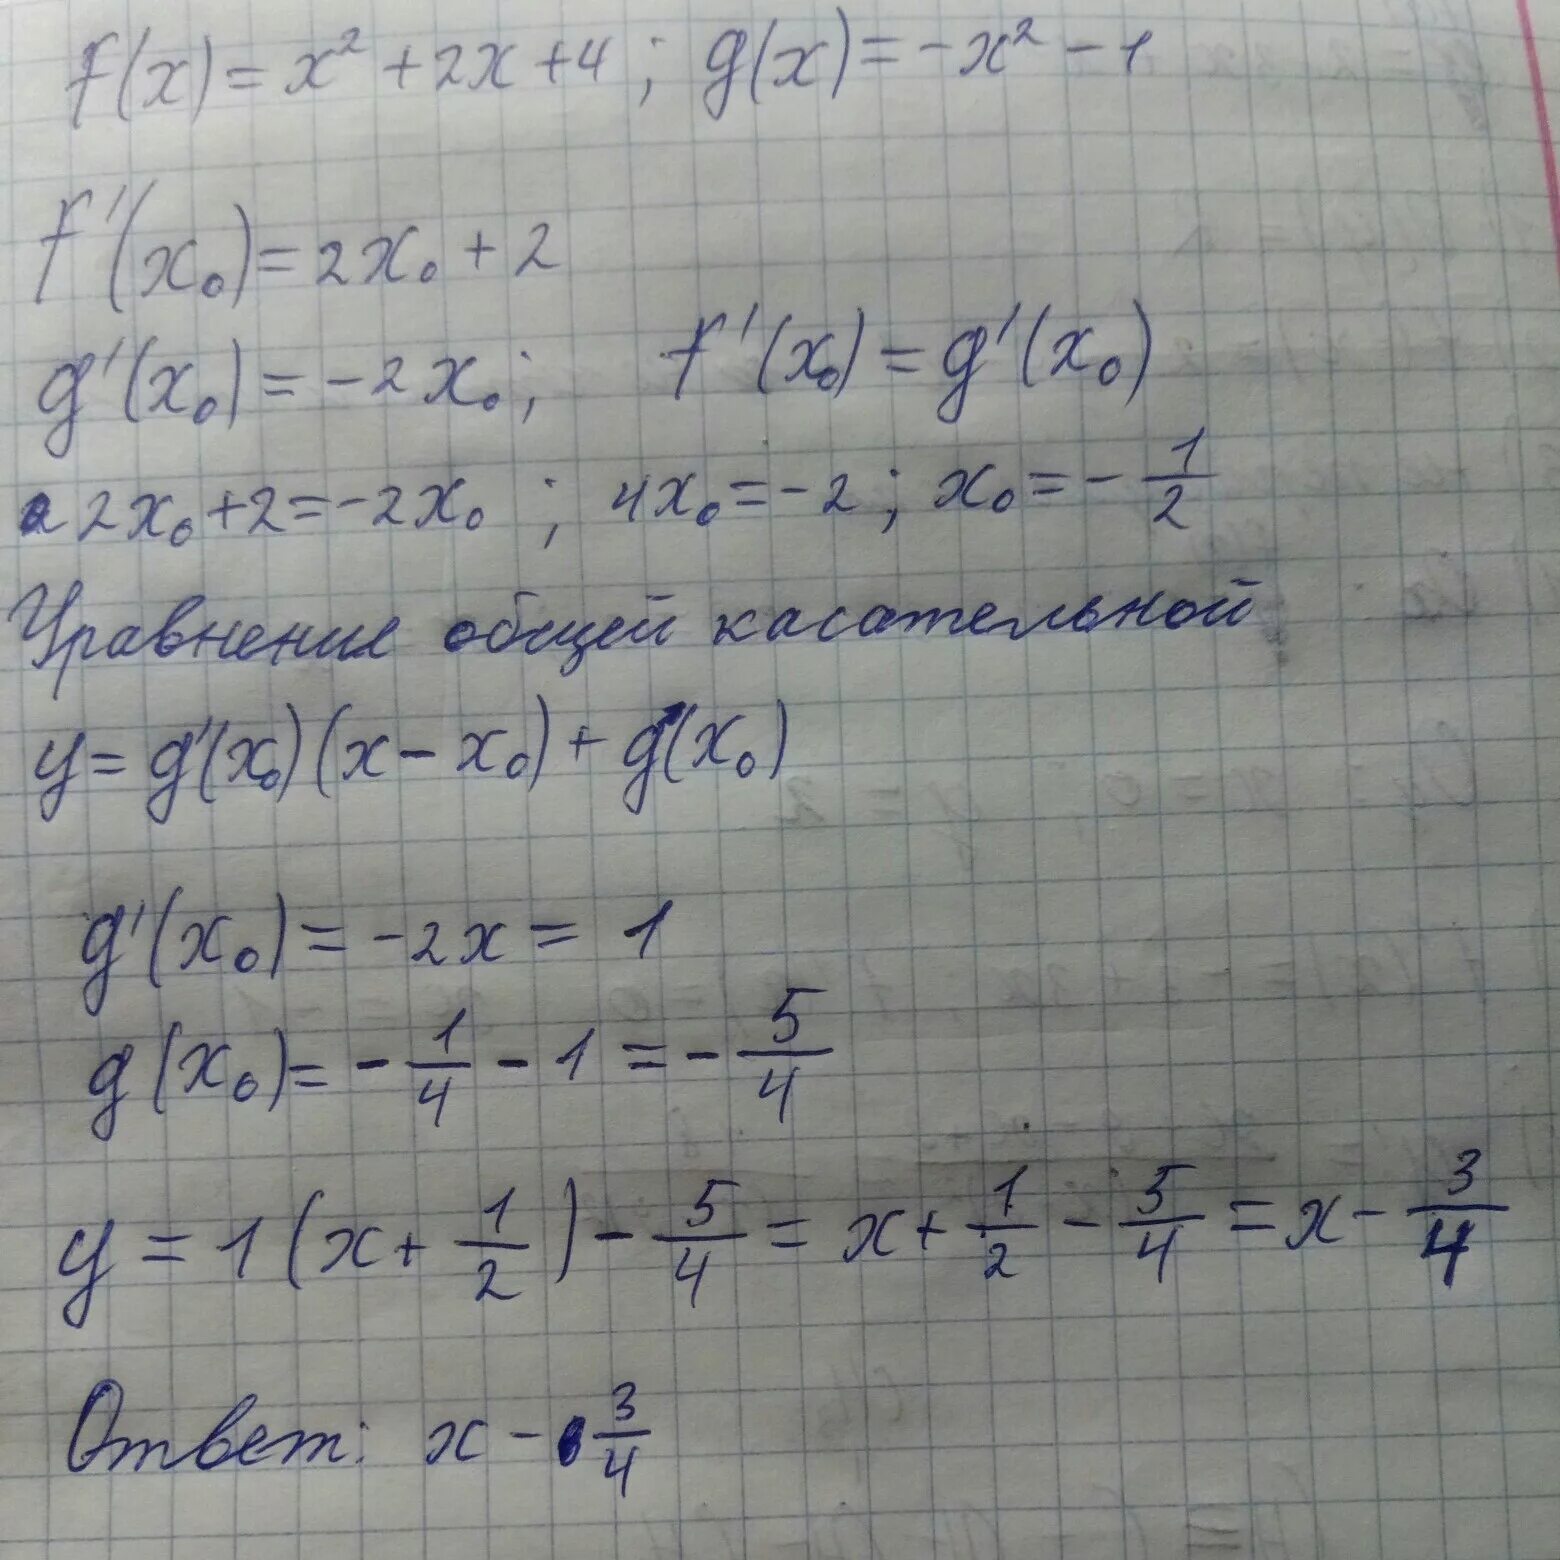 Даны функции f(x)=2x-1 и g(x)=x2. Даны функции f x x 2 -2x и g x 3x-4. G(2-X)/G(2+X). Даны функции f(x)=2x и g(x)=x^2.